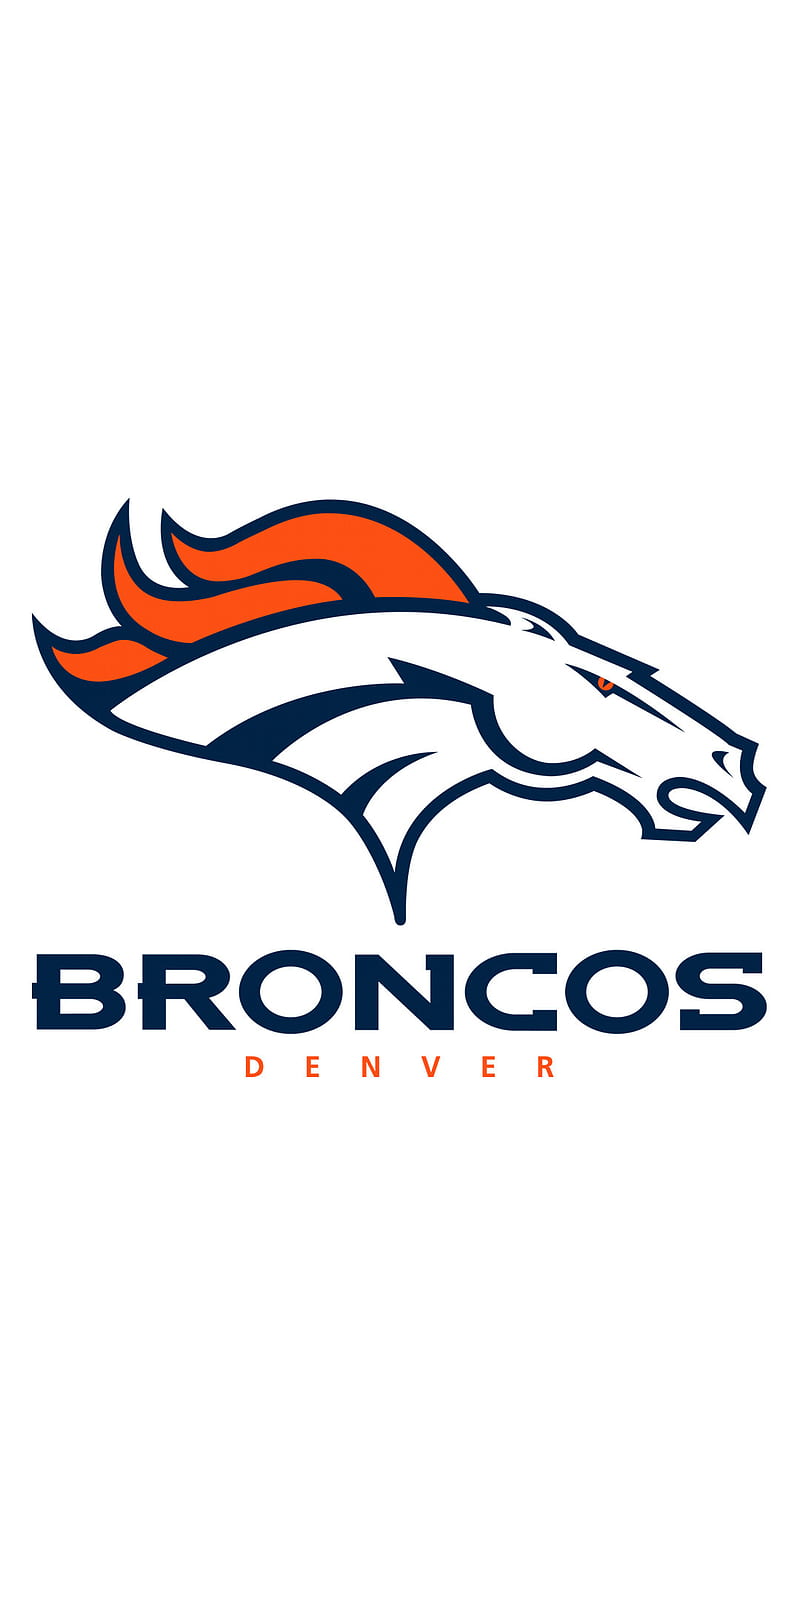 Denver Broncos Logo coloring page - Download, Print or Color Online for Free